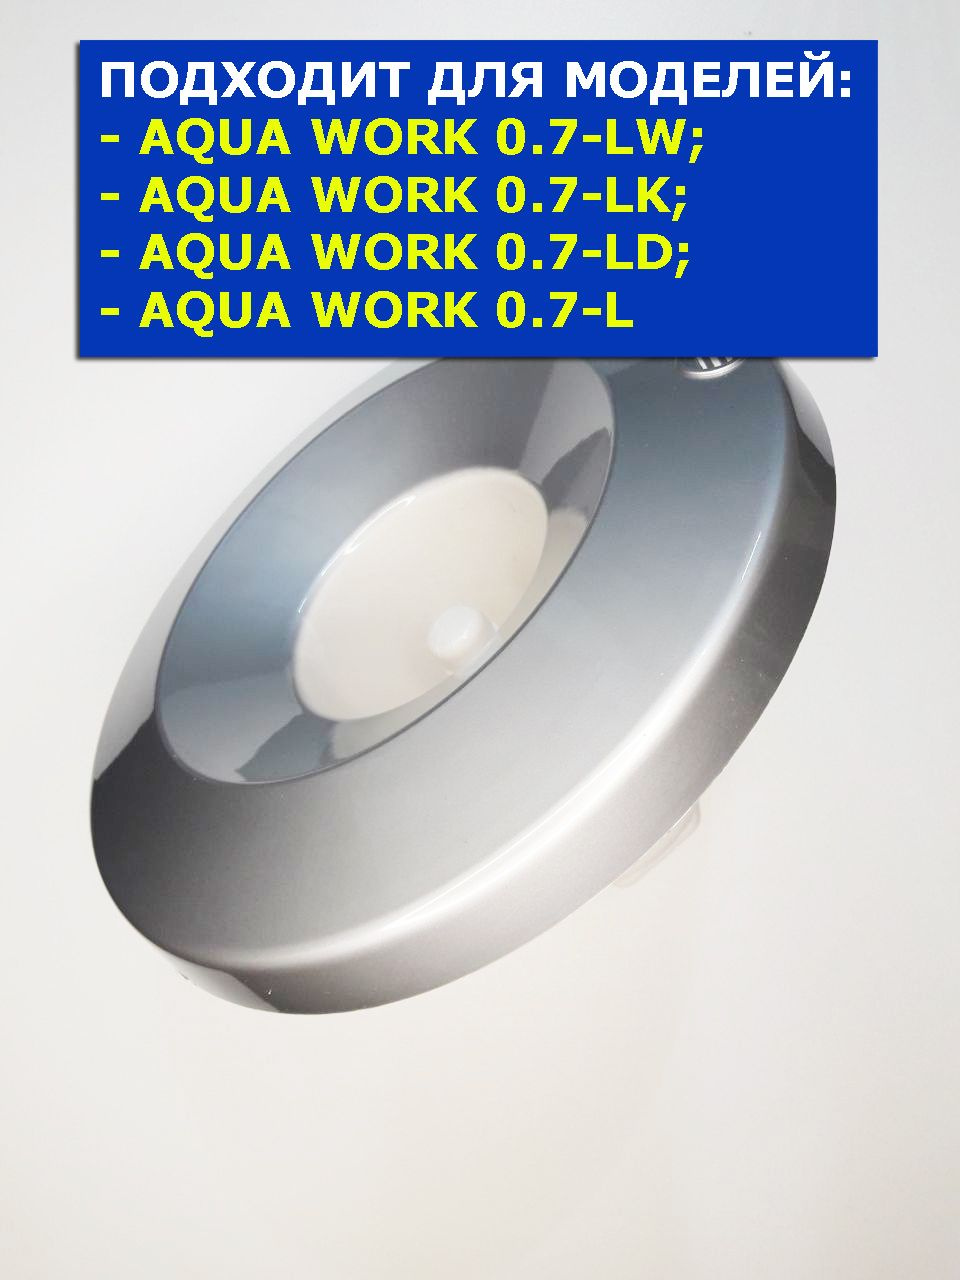 Водоприемник кулера для воды Aqua Work 0.7-LD серебро